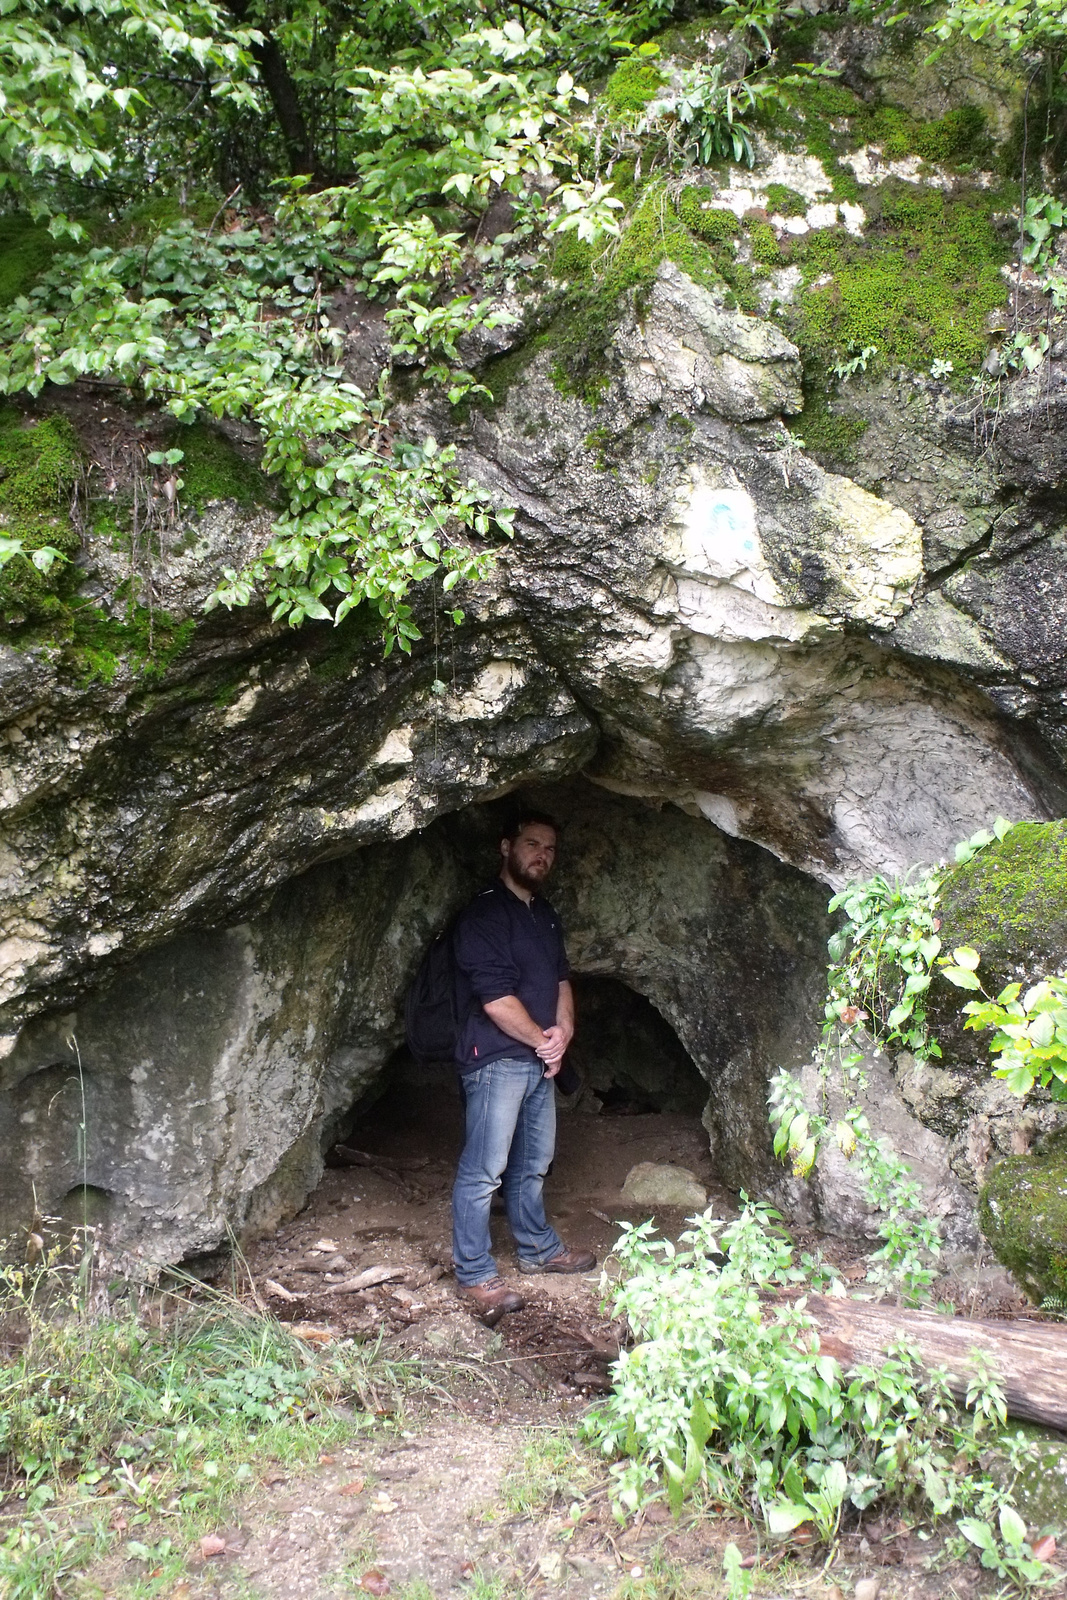 DSCF0023 Likas-kő barlang, Bakonybéltől északra